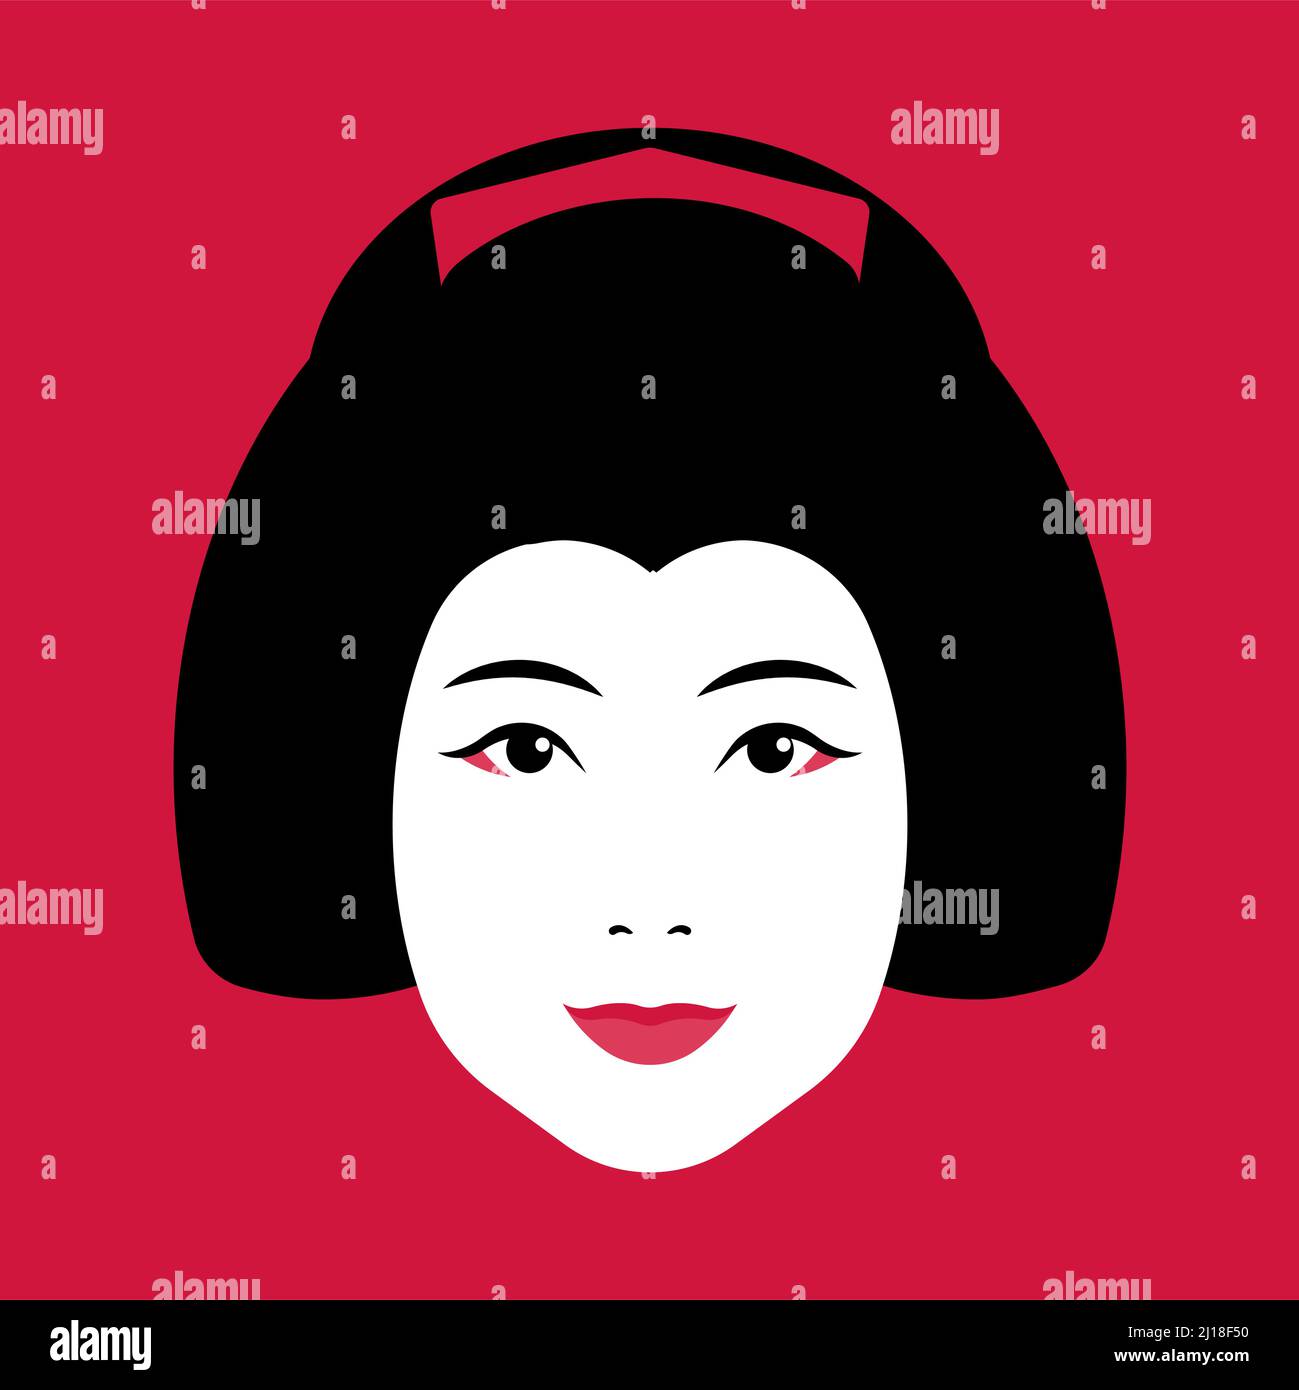 Geisha visage - geisha japonais avec maquillage, coiffure, épingles à cheveux. Gros plan sur le visage de la femme sur fond rouge. Concept de culture japonaise, garm traditionnel Illustration de Vecteur